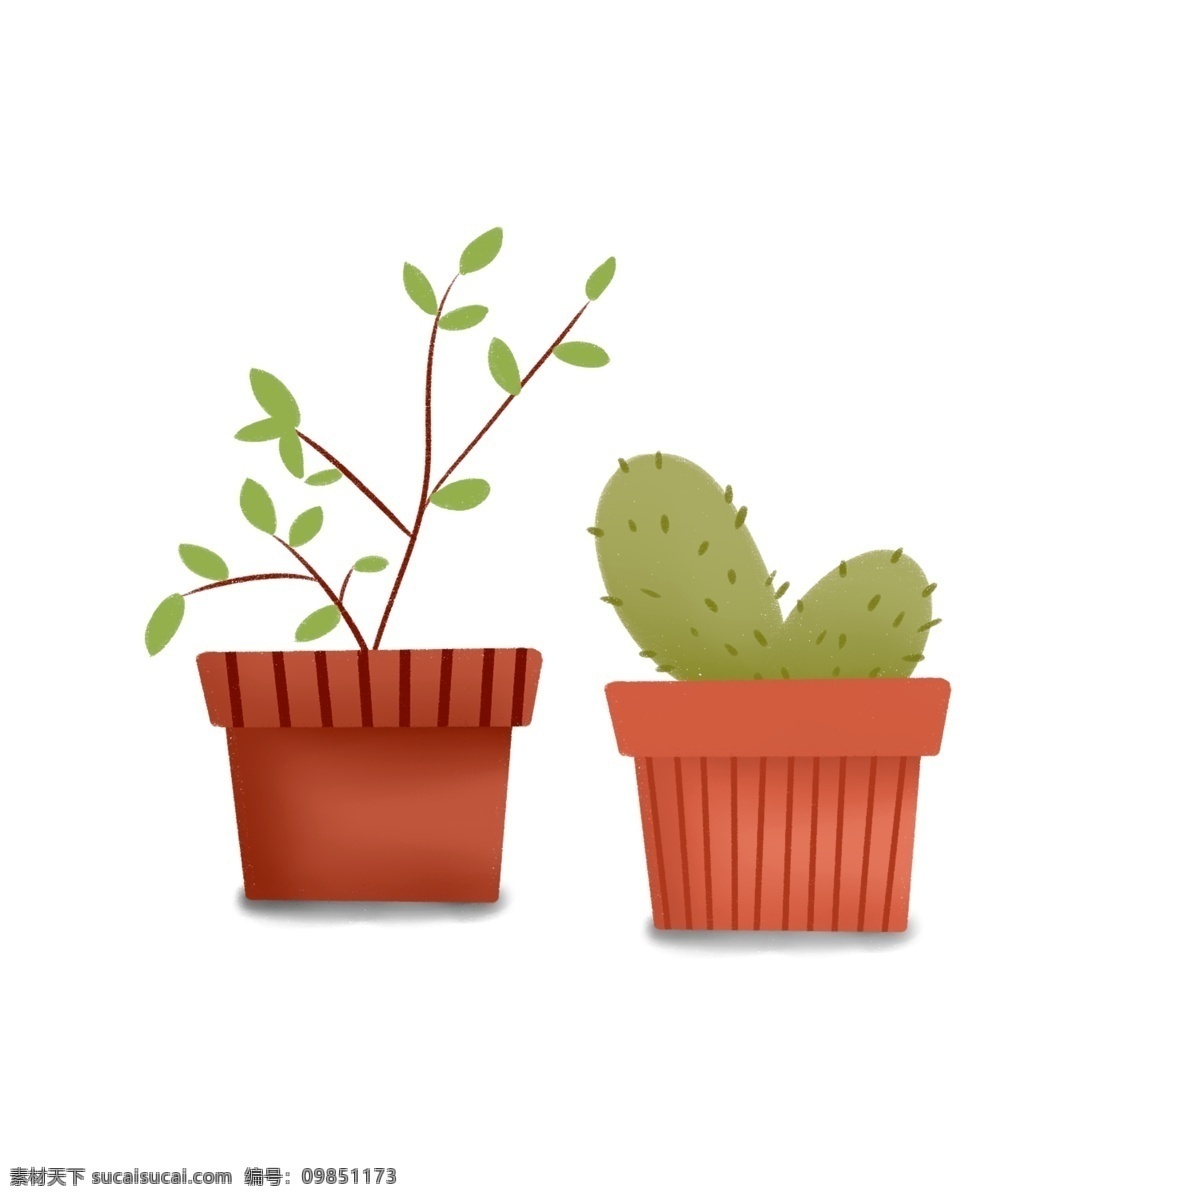 彩绘 两 盆 绿色 盆栽 插画 商用 元素 植物 花盆 仙人掌